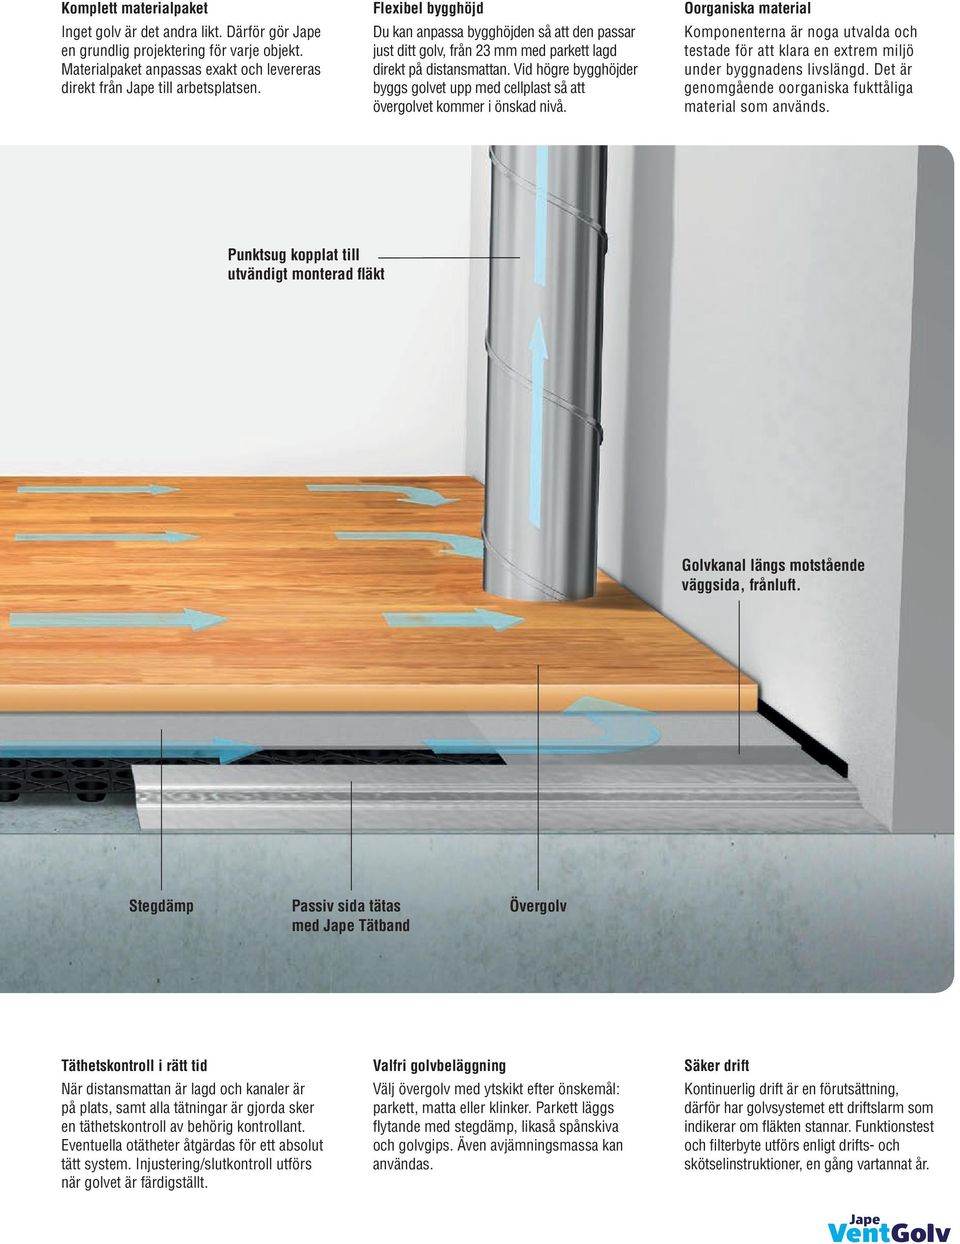 Vid högre bygghöjder byggs golvet upp med cellplast så att övergolvet kommer i önskad nivå.